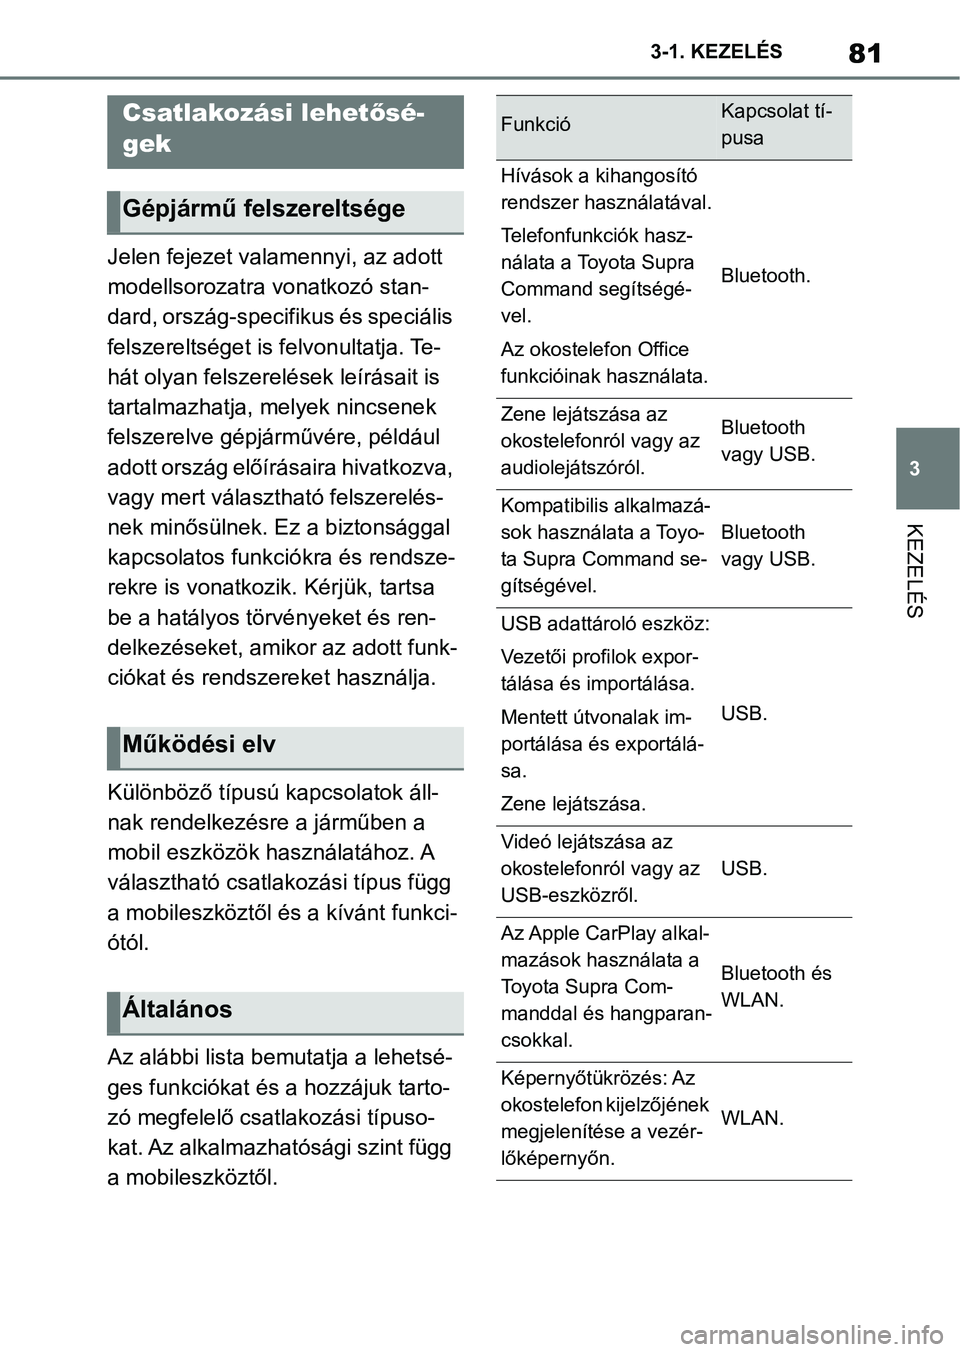 TOYOTA SUPRA 2020  Kezelési útmutató (in Hungarian) 81
3
3-1. KEZELÉS
KEZELÉS
Jelen fejezet valamennyi, az adott 
modellsorozatra vonatkozó stan-
dard, ország-specifikus és speciális 
felszereltséget is f
elvonultatja. Te-
hát olyan felszerelé